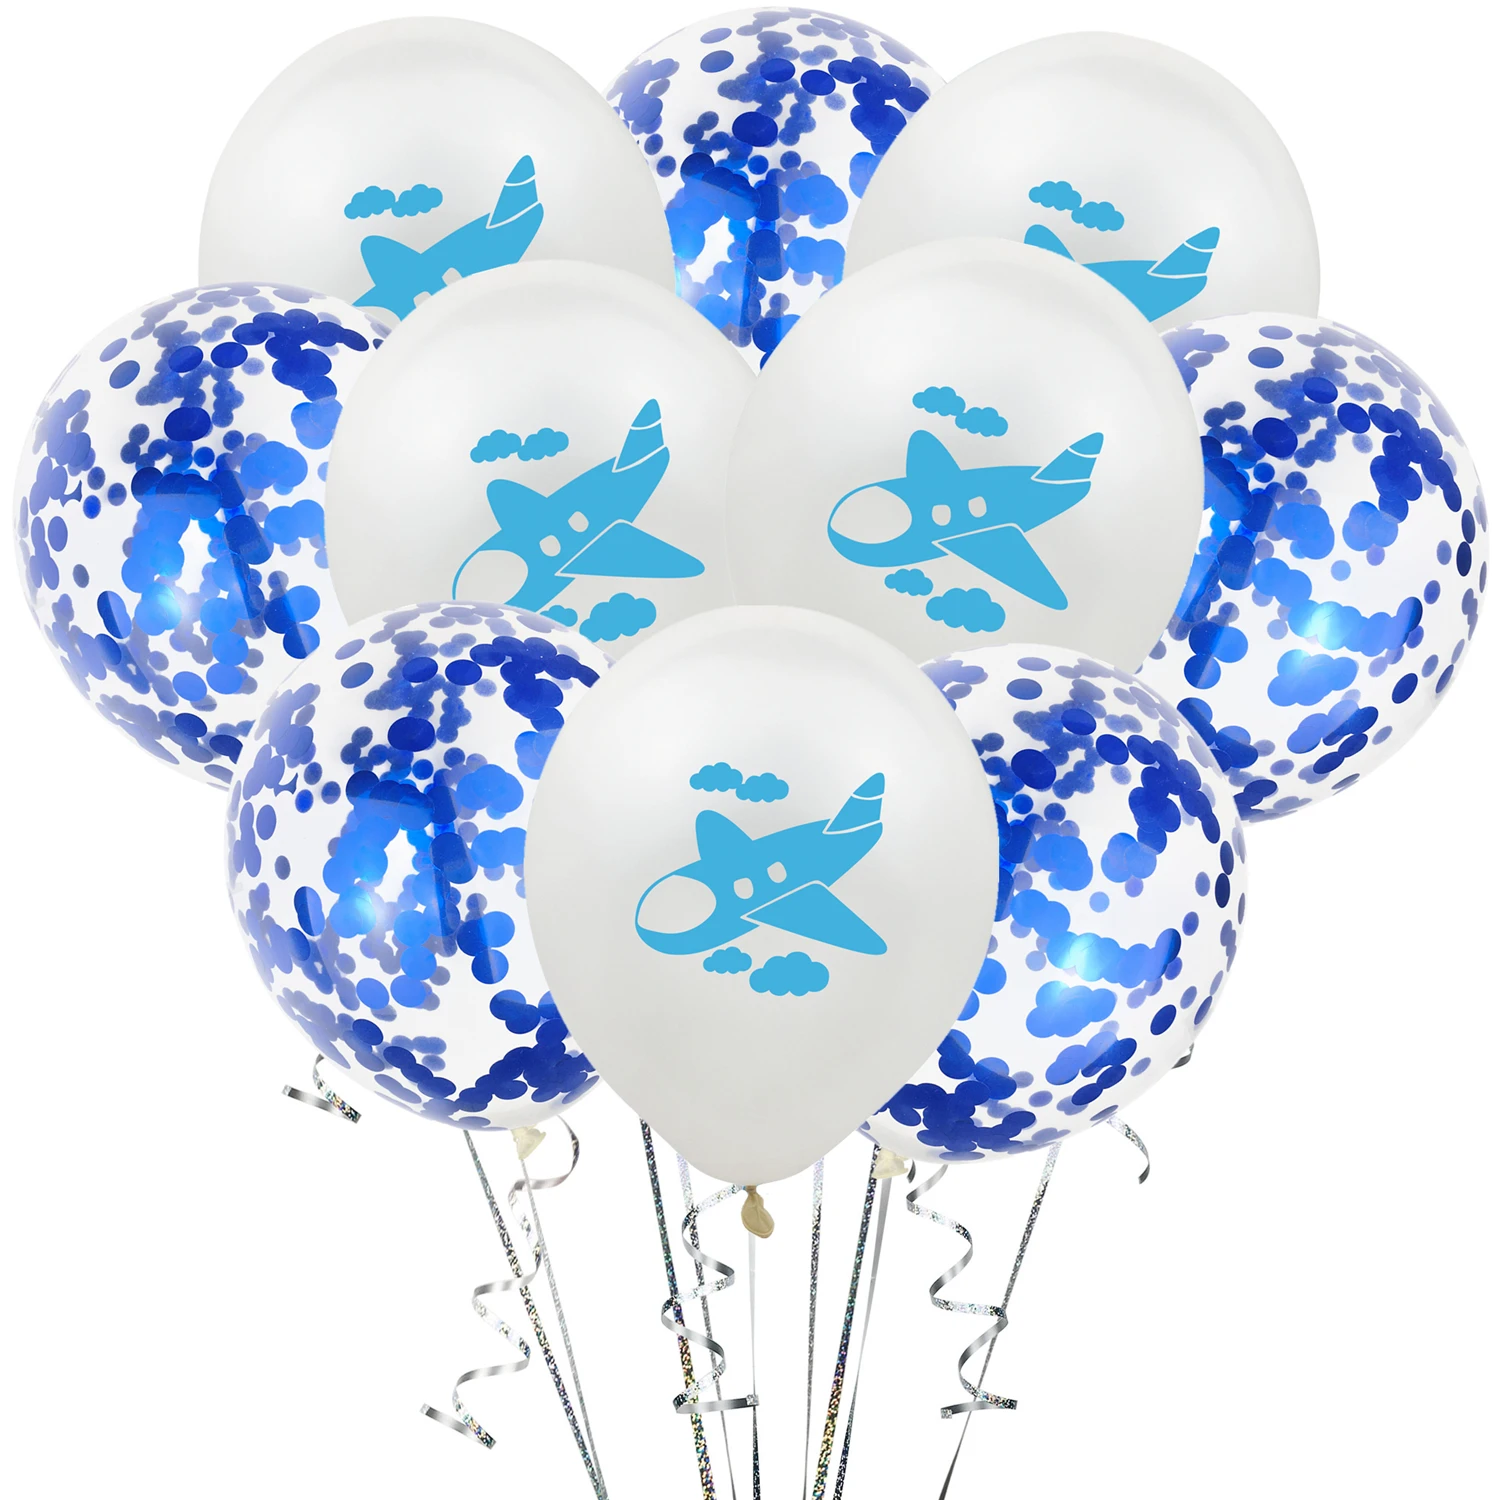 ZLJQ Frist день рождения самолет вечерние воздушные шары 10 шт. 12 дюймов латексный шар для украшения дня рождения детский воздушный шар для мальчика баллон